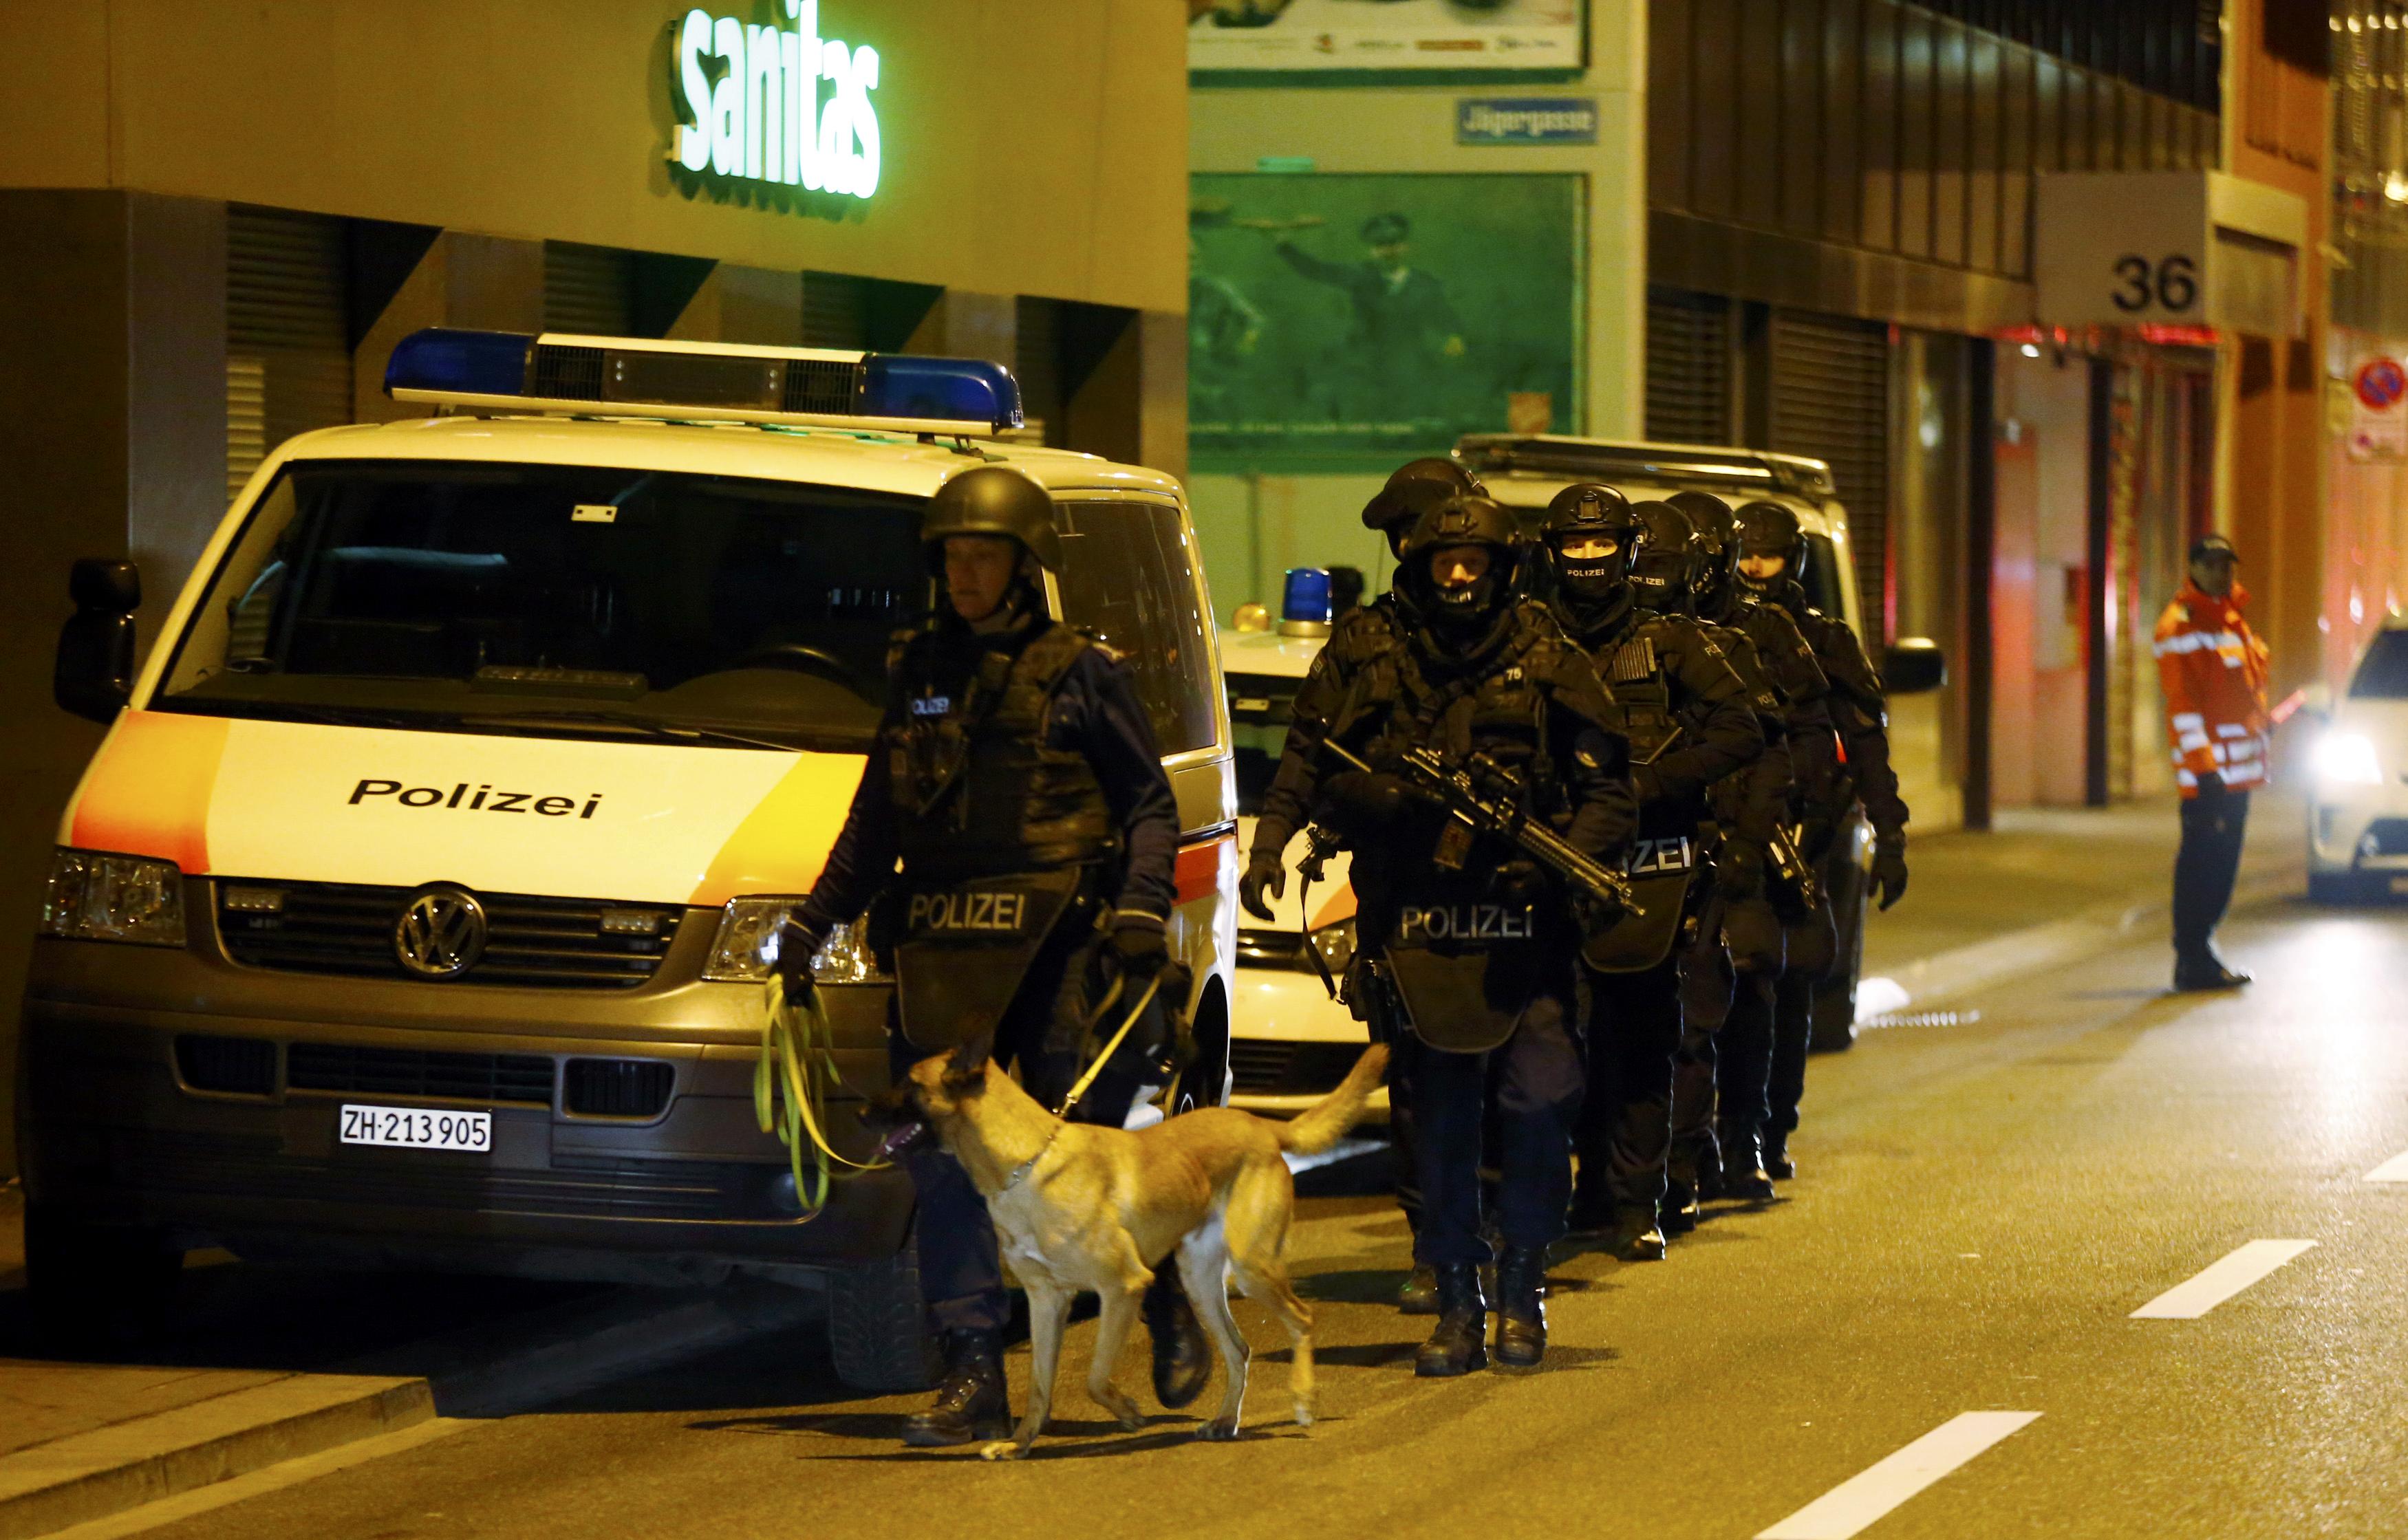 Les autorités suisses séviront-elles enfin contre les extrémistes islamiste ? D. R.